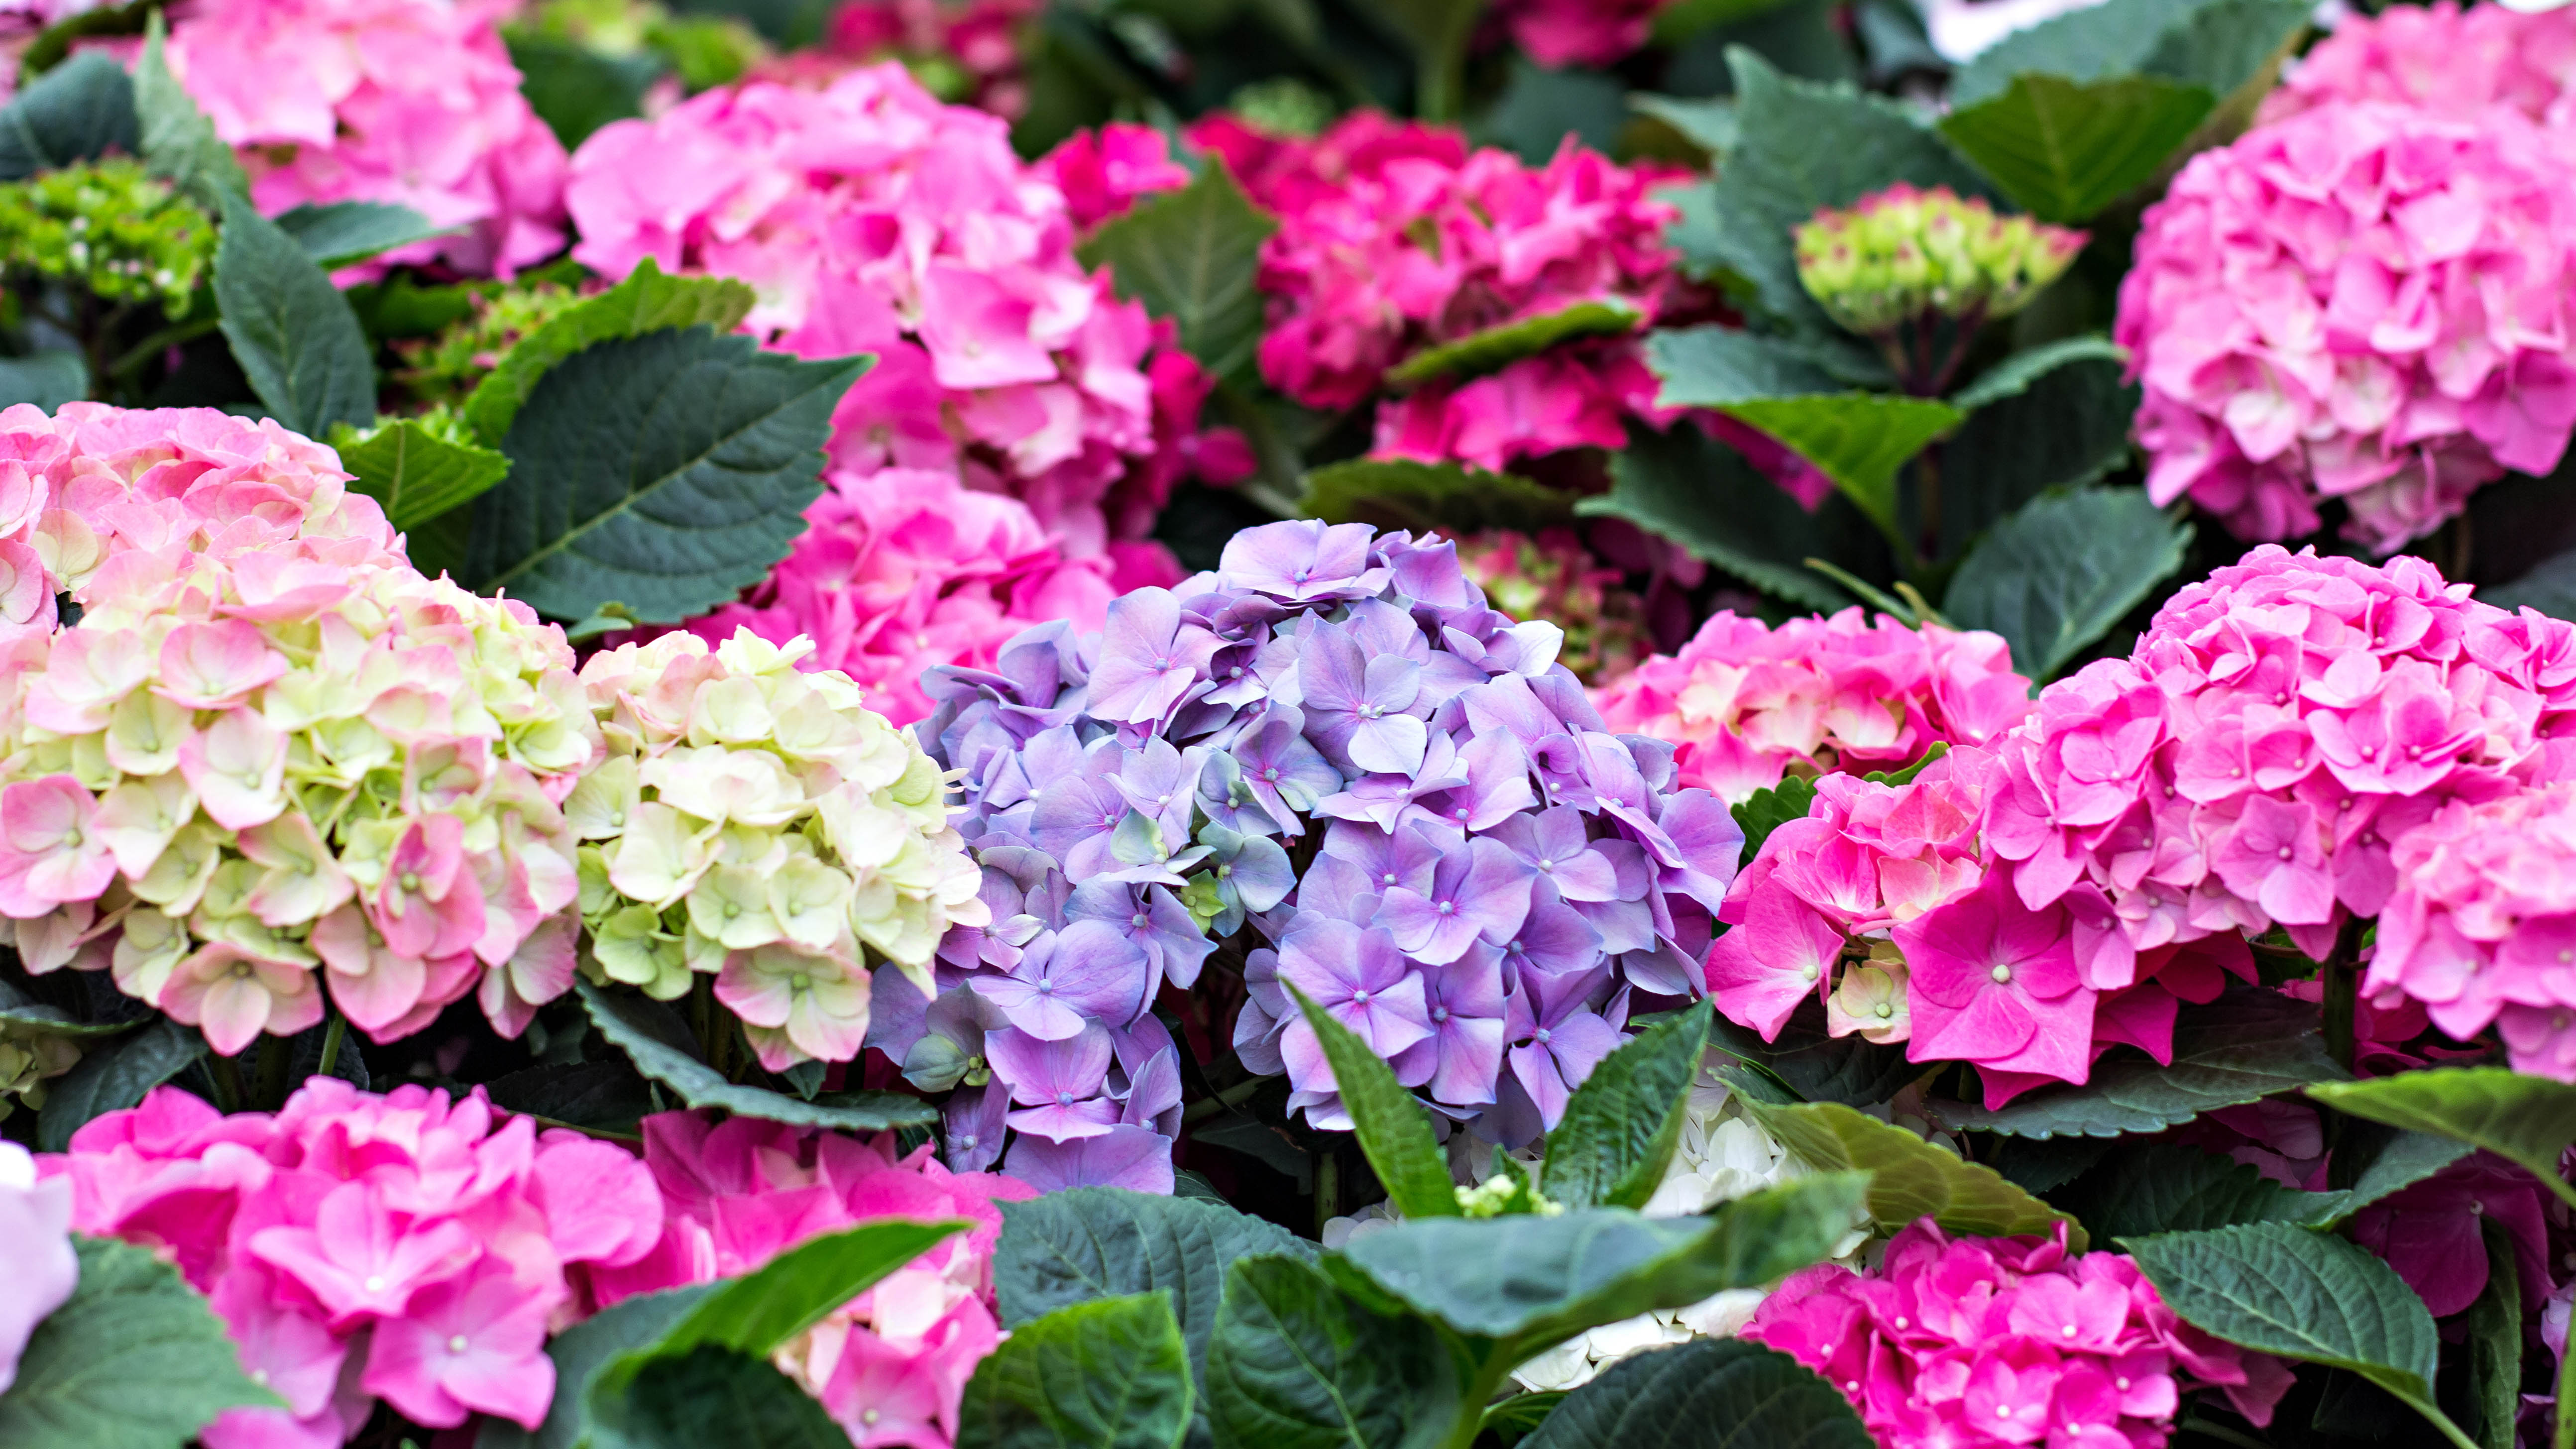 Гортензии с разными цветами цветка, в том числе розовыми, голубыми и белыми